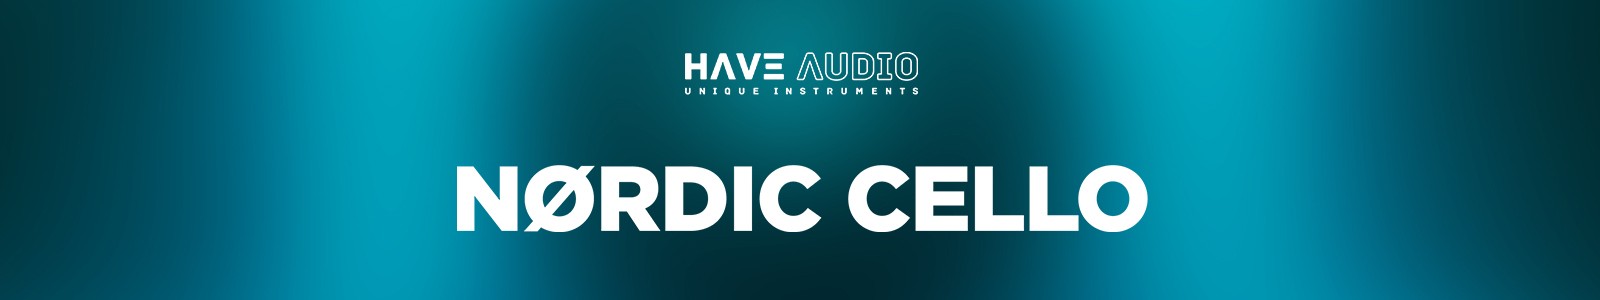 Have Audio Nordic Cello